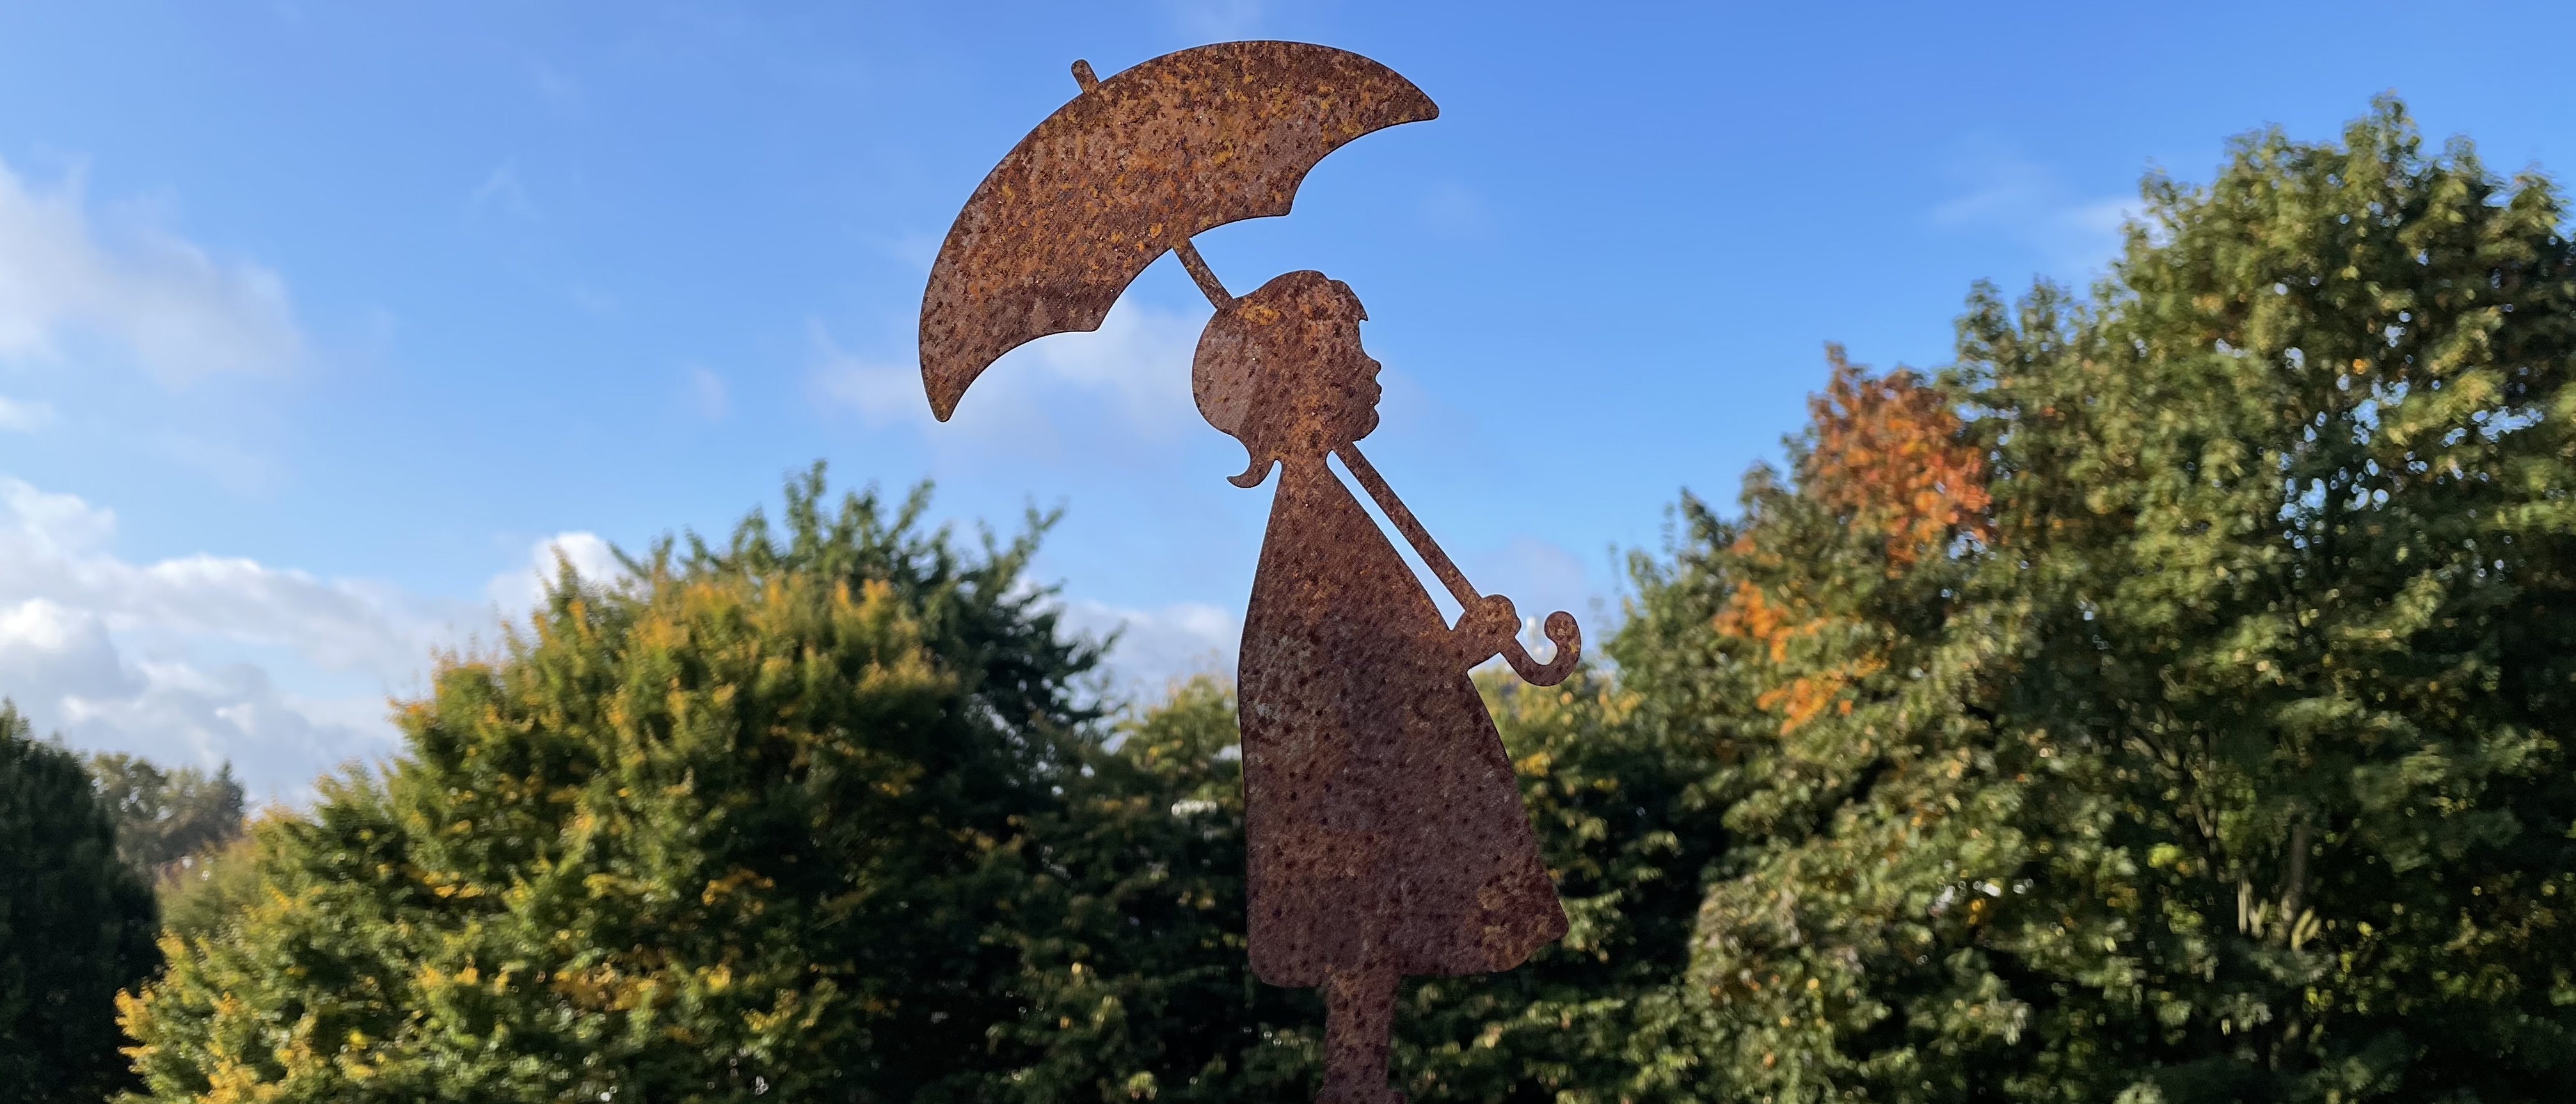 Figur (Mädchen mit Regenschirm) vor blauem Himmel und Herbstbäumen